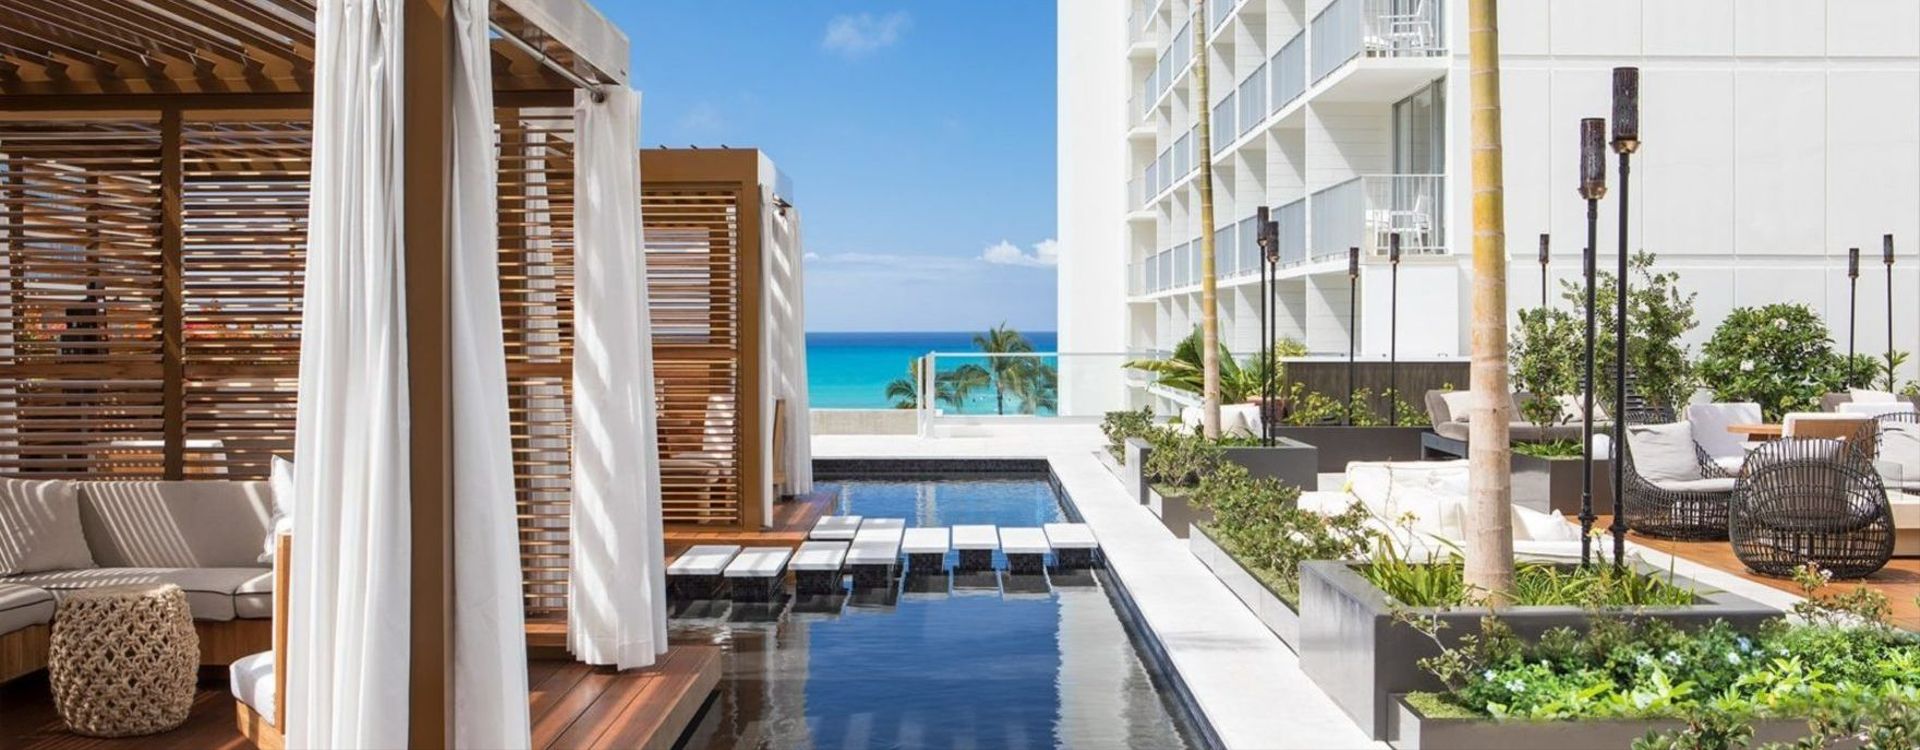 Alohilani Resort Waikiki Beach-Example of accommodation (2).jpg